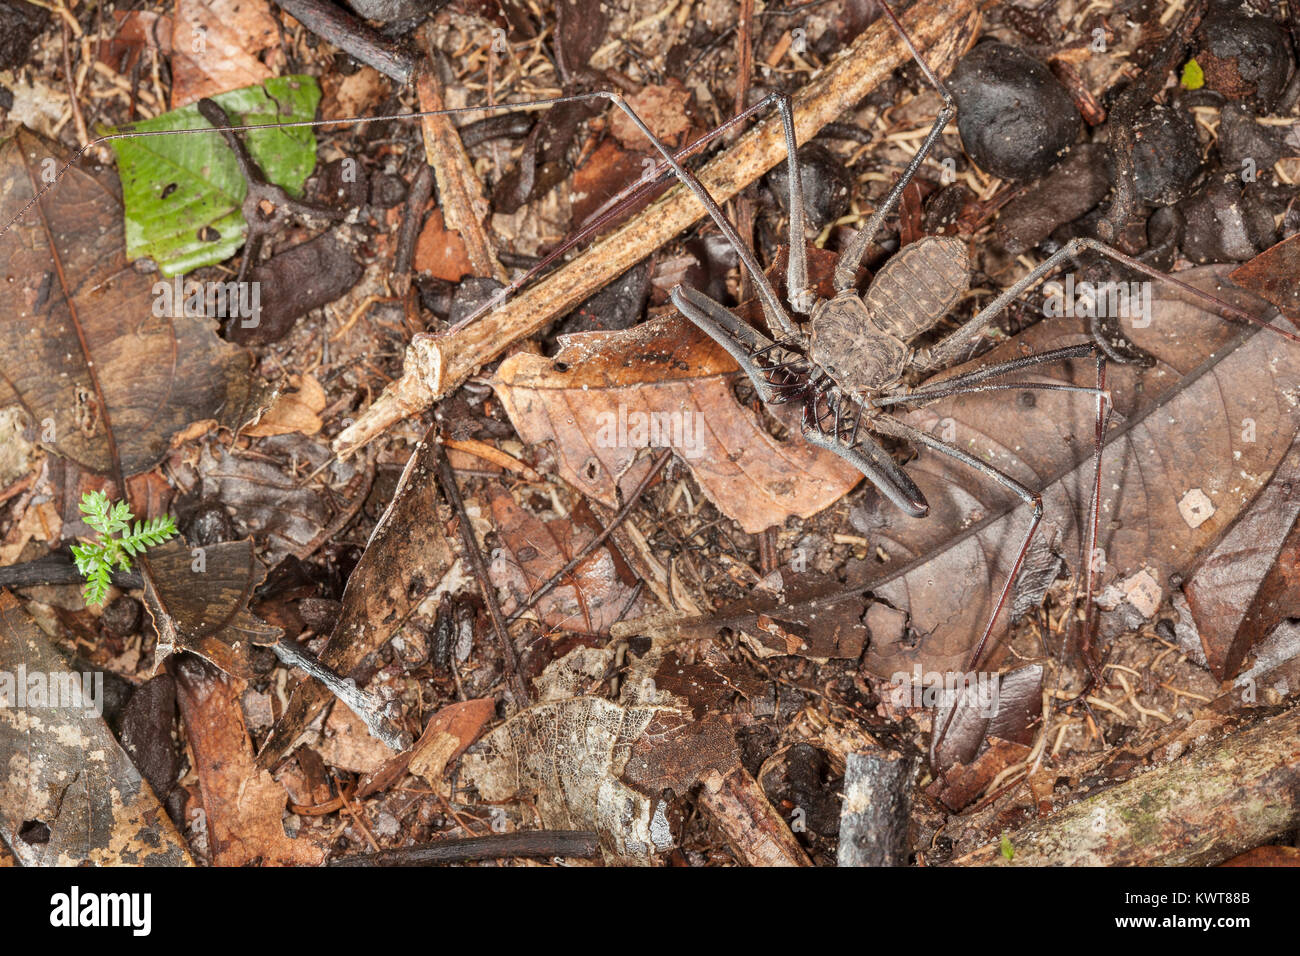 Un fouet sans queue (Amblypygid scorpion) marcher le long de la forêt-de-chaussée d'un lowland rainforest péruvien de nuit. Banque D'Images